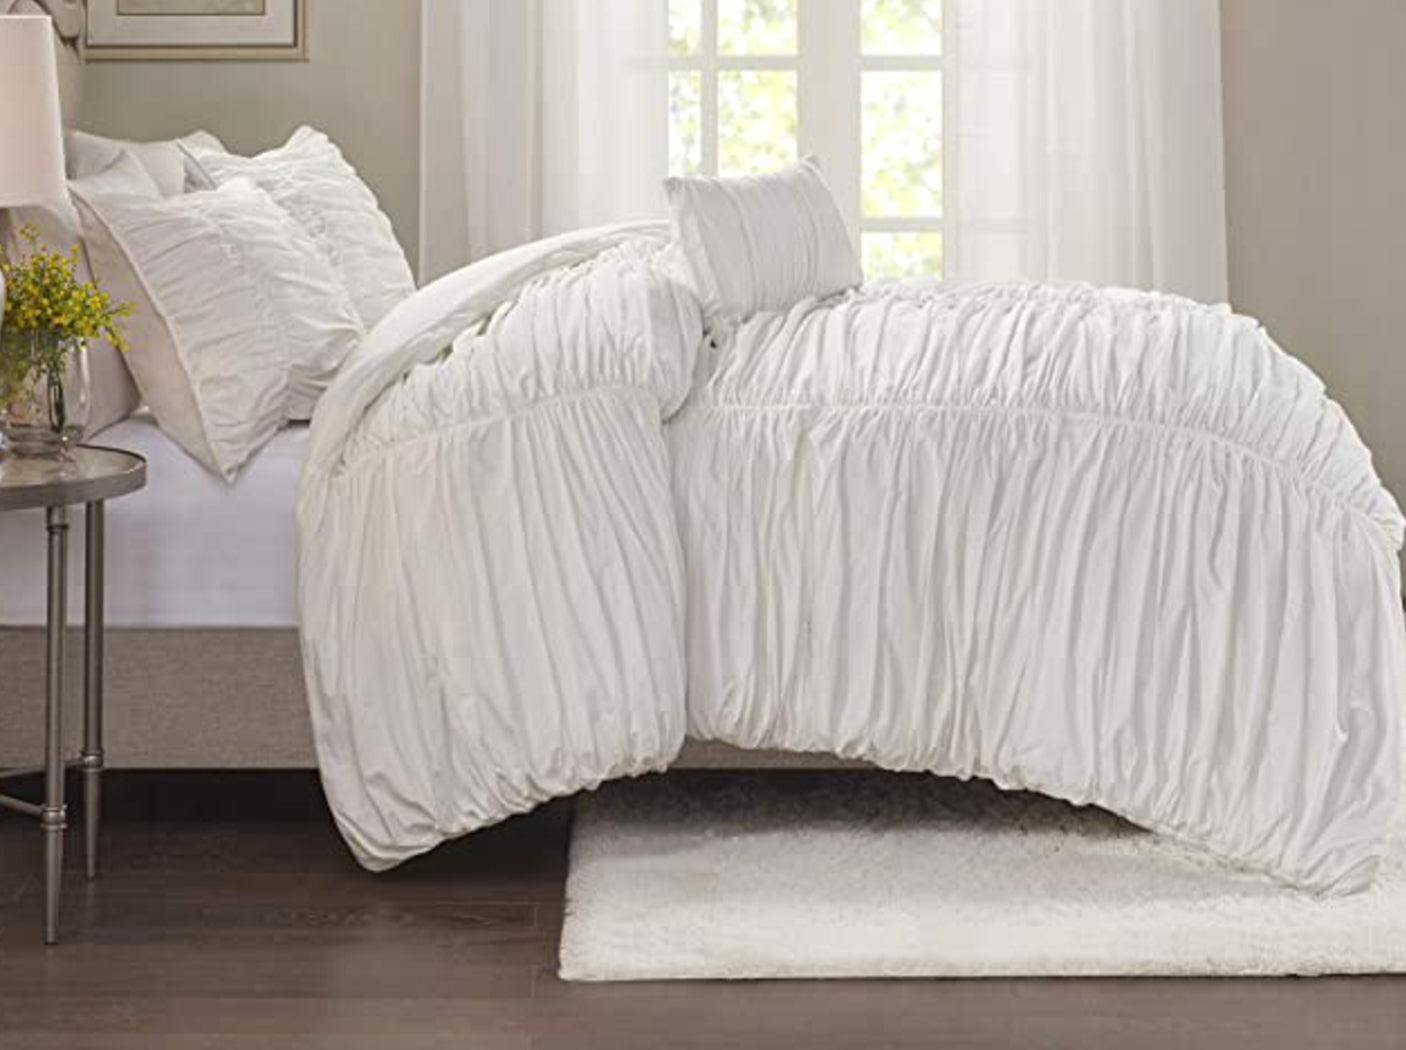 Madison Park Comforter Set-Textured Luxury Design Bedding, Sham, Pillows 4Piece